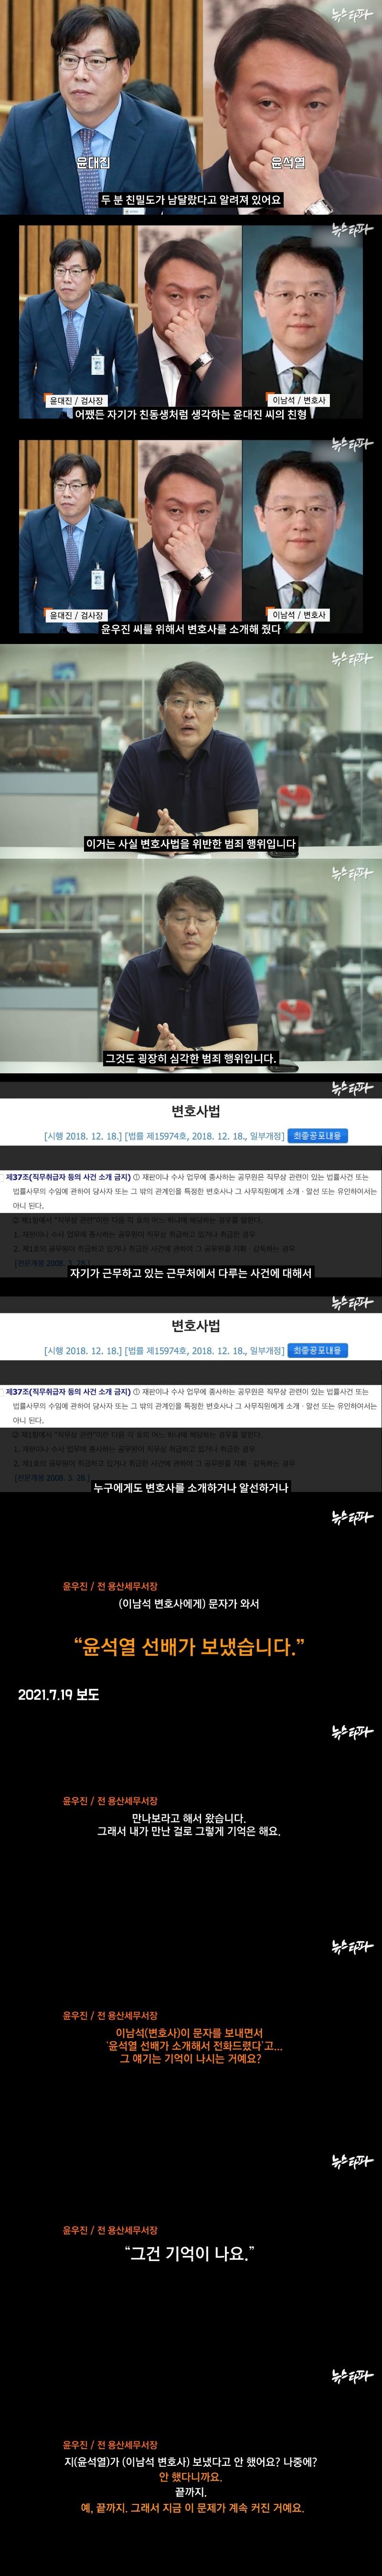 윤석열 후보의 거짓말을 밝혀냈습니다 - 뉴스타파 1-12 screenshot-vert.jpg